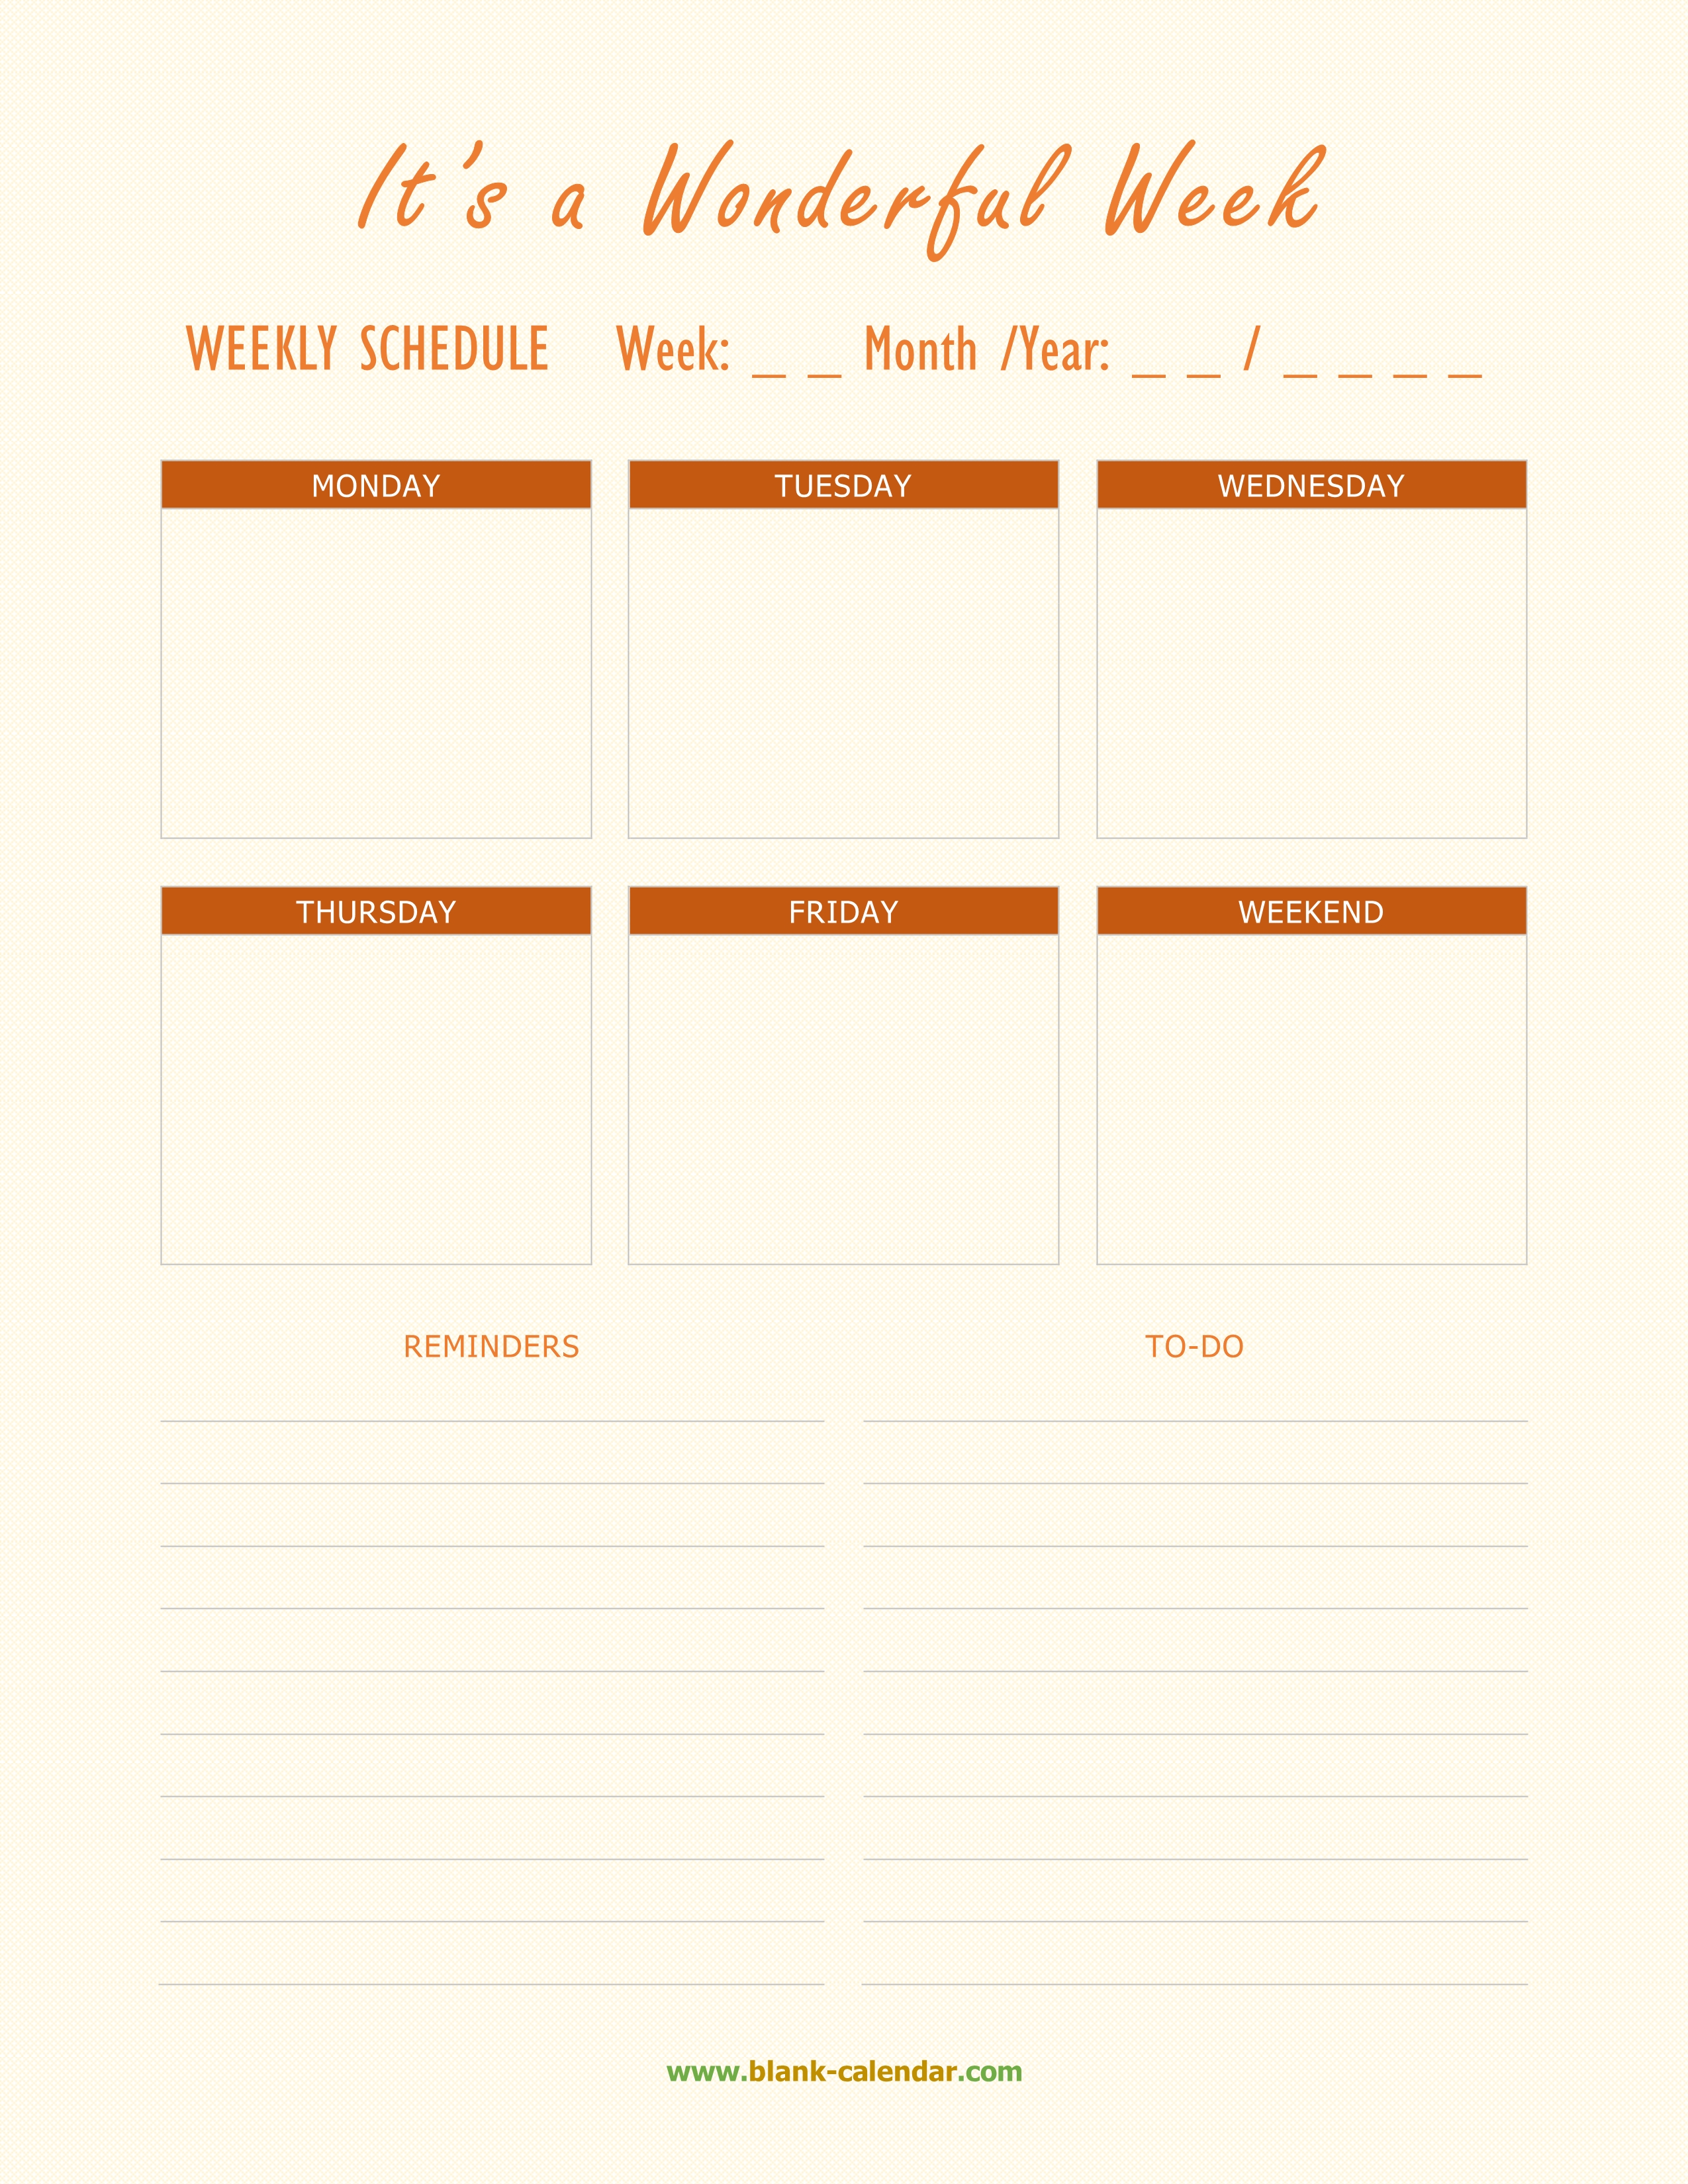 Editable PDF Weekly Schedule Template